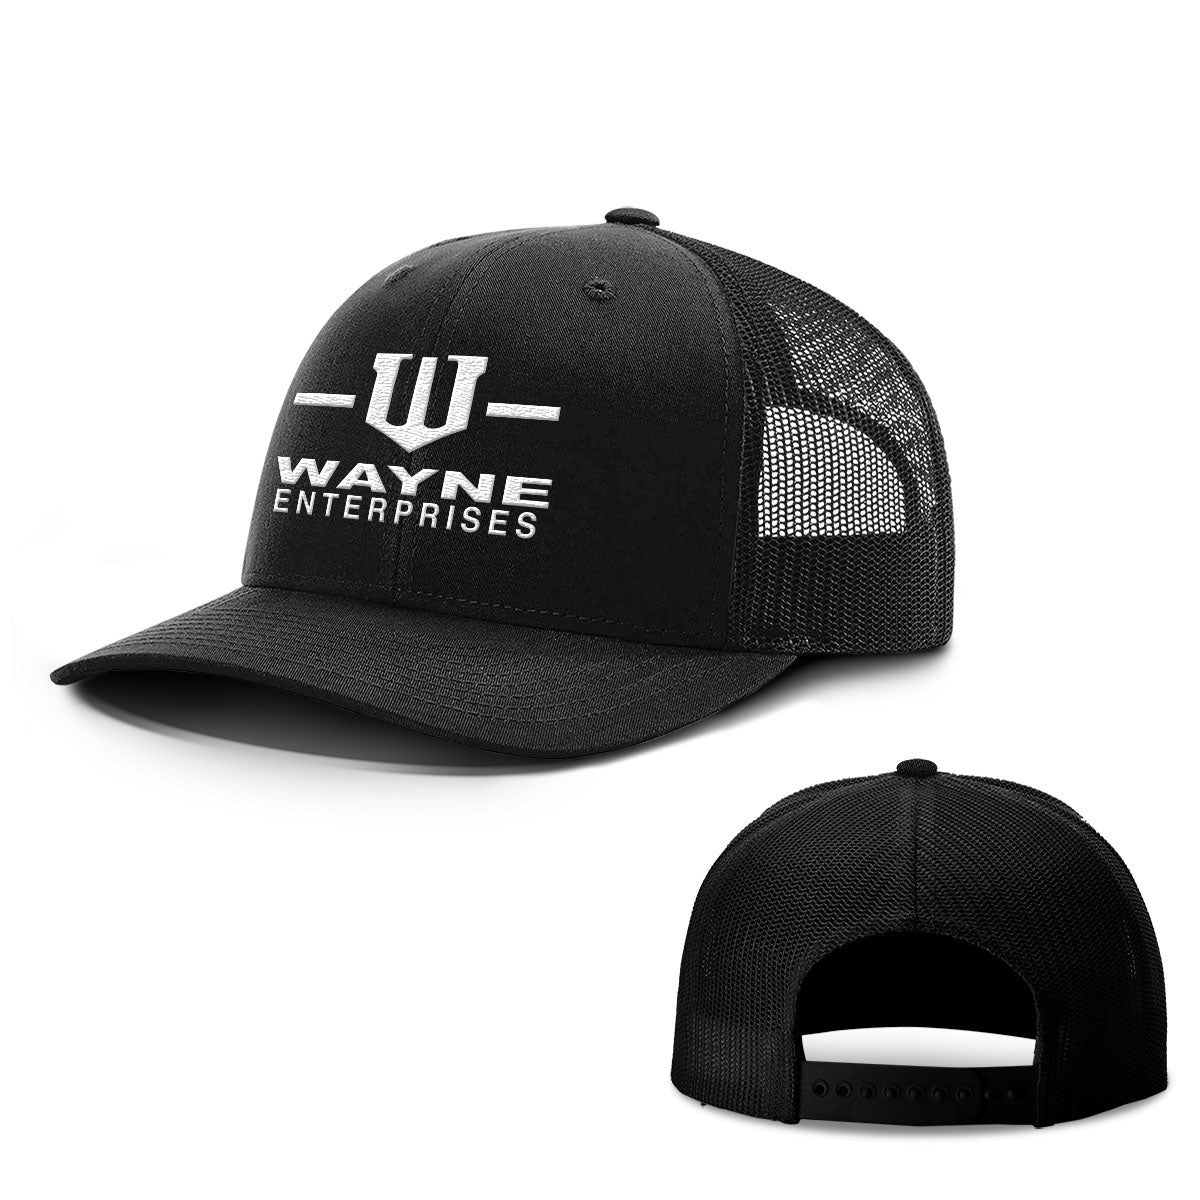 Wayne Enterprises Hats - BustedTees.com